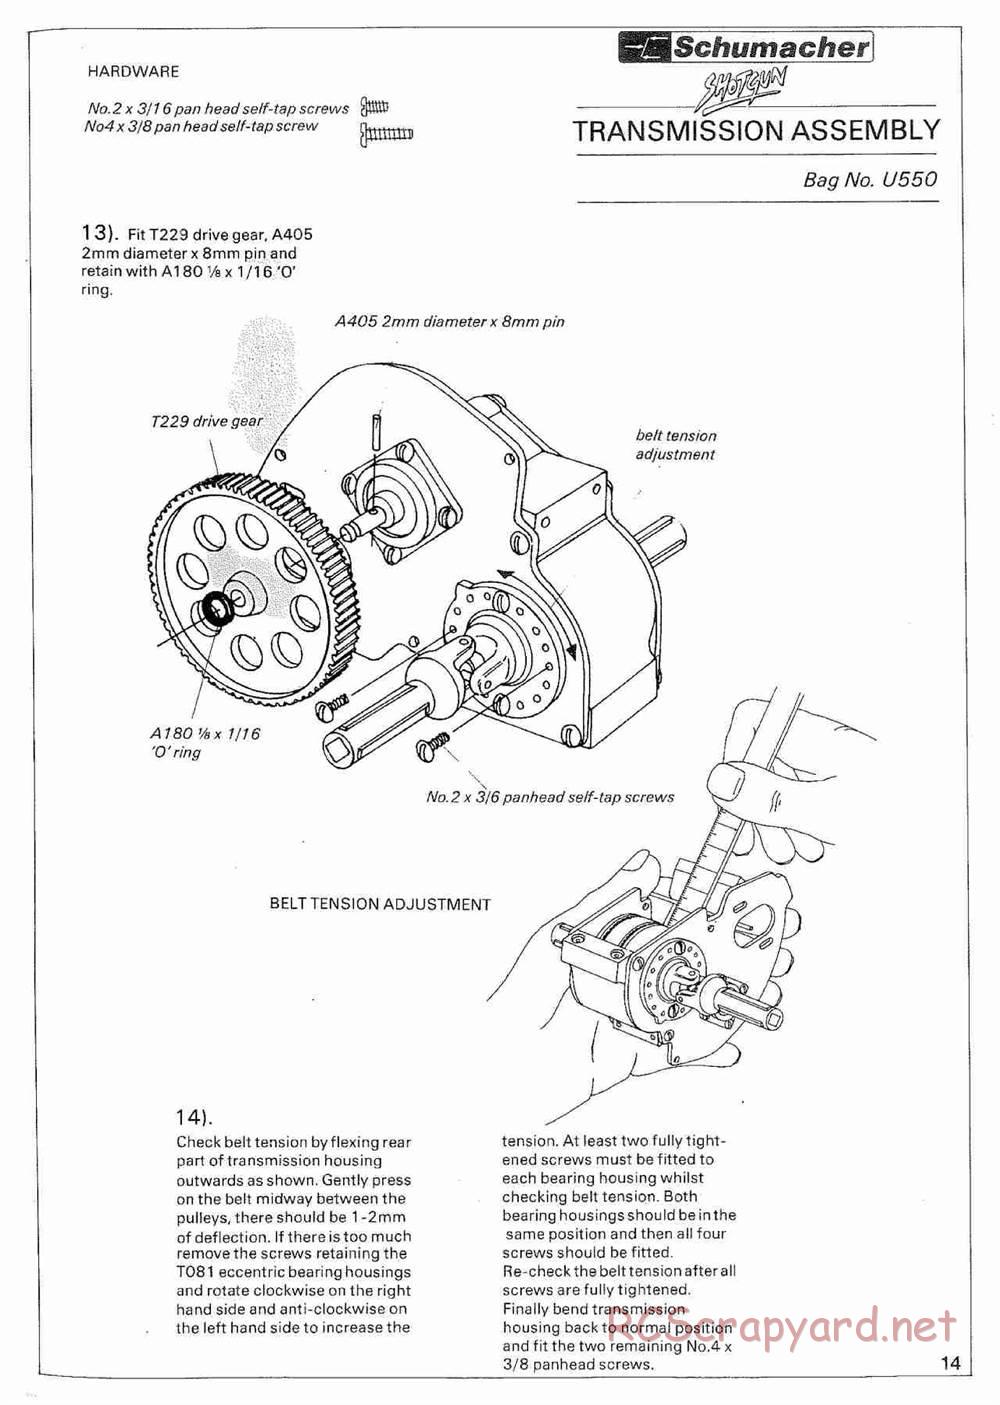 Schumacher - Shotgun - Manual - Page 19